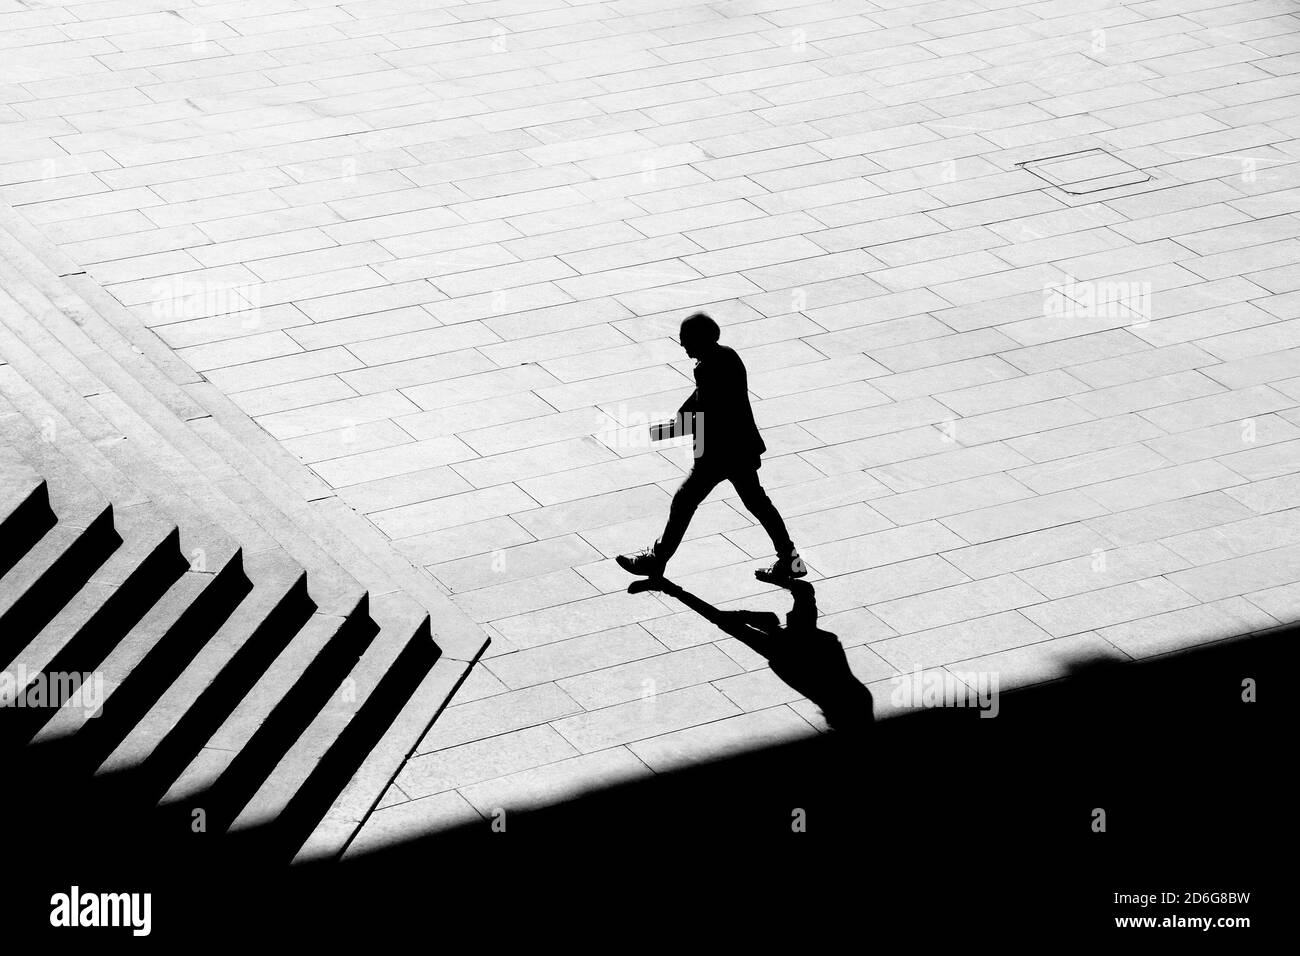 Belgrado, Serbia - 09 ottobre 2020: Sagoma d'ombra di un uomo che tiene i documenti mentre cammina sul marciapiede della piazza della città verso le scale di un edificio pubblico, Foto Stock